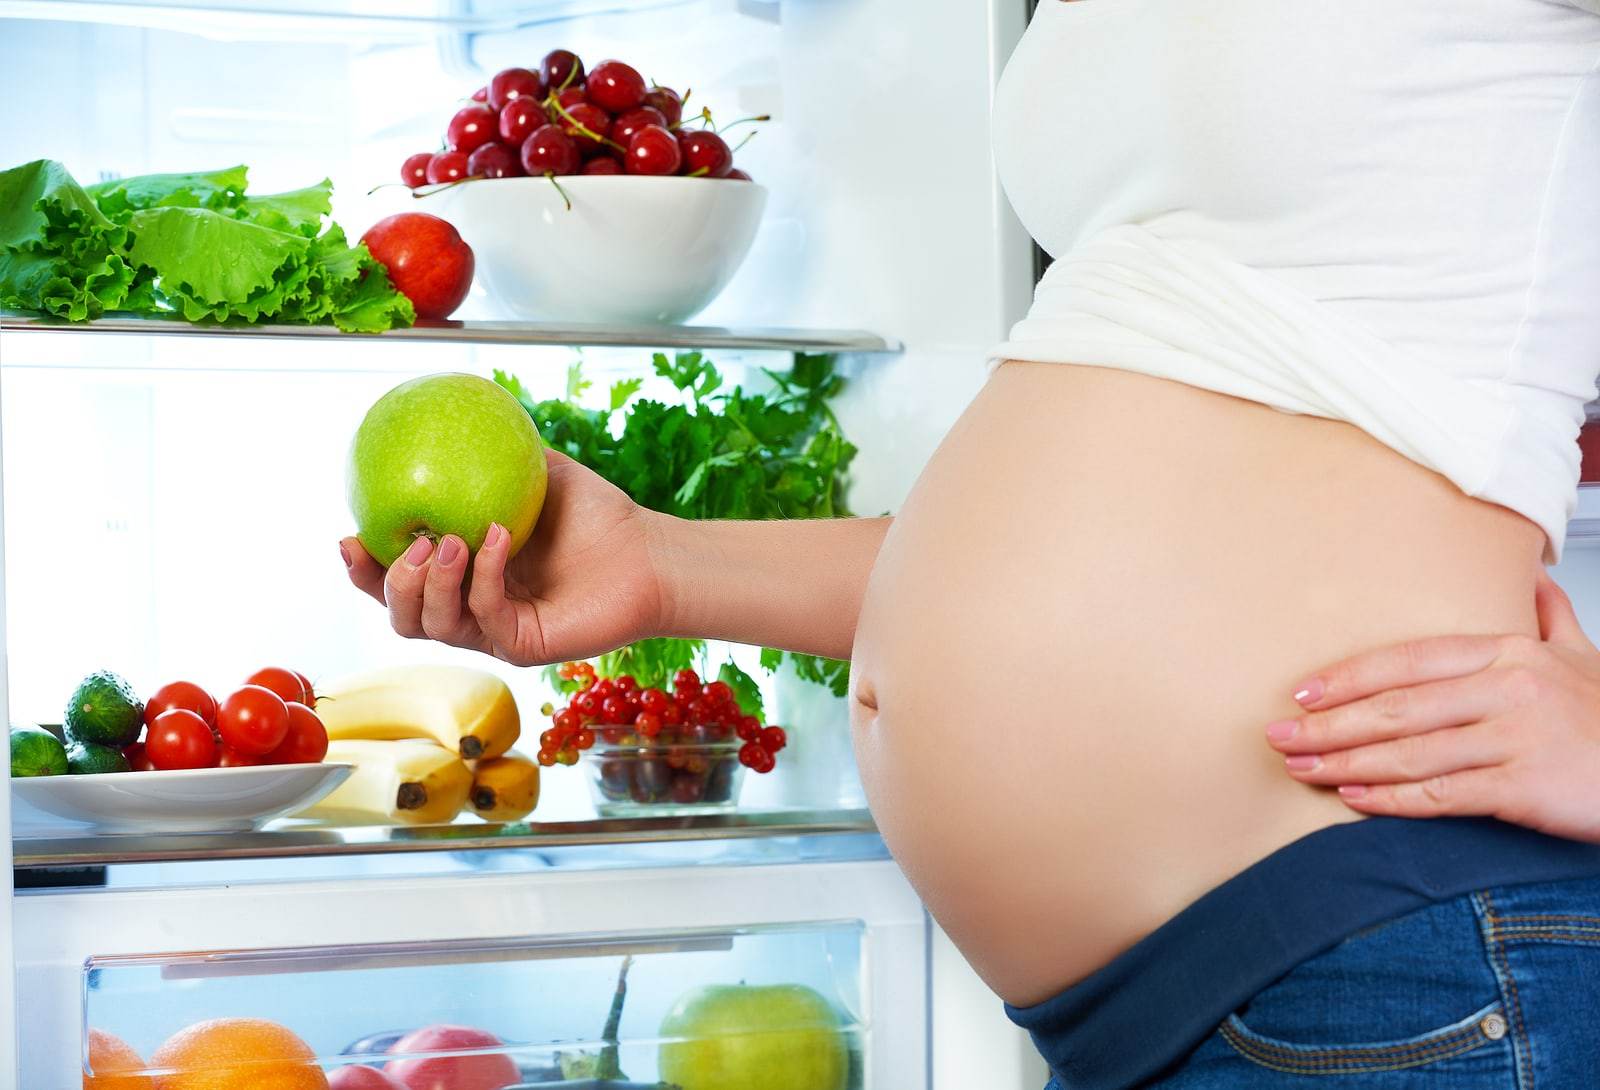 cukrzyca ciążowa - objawy, zagrożenia co jeść?